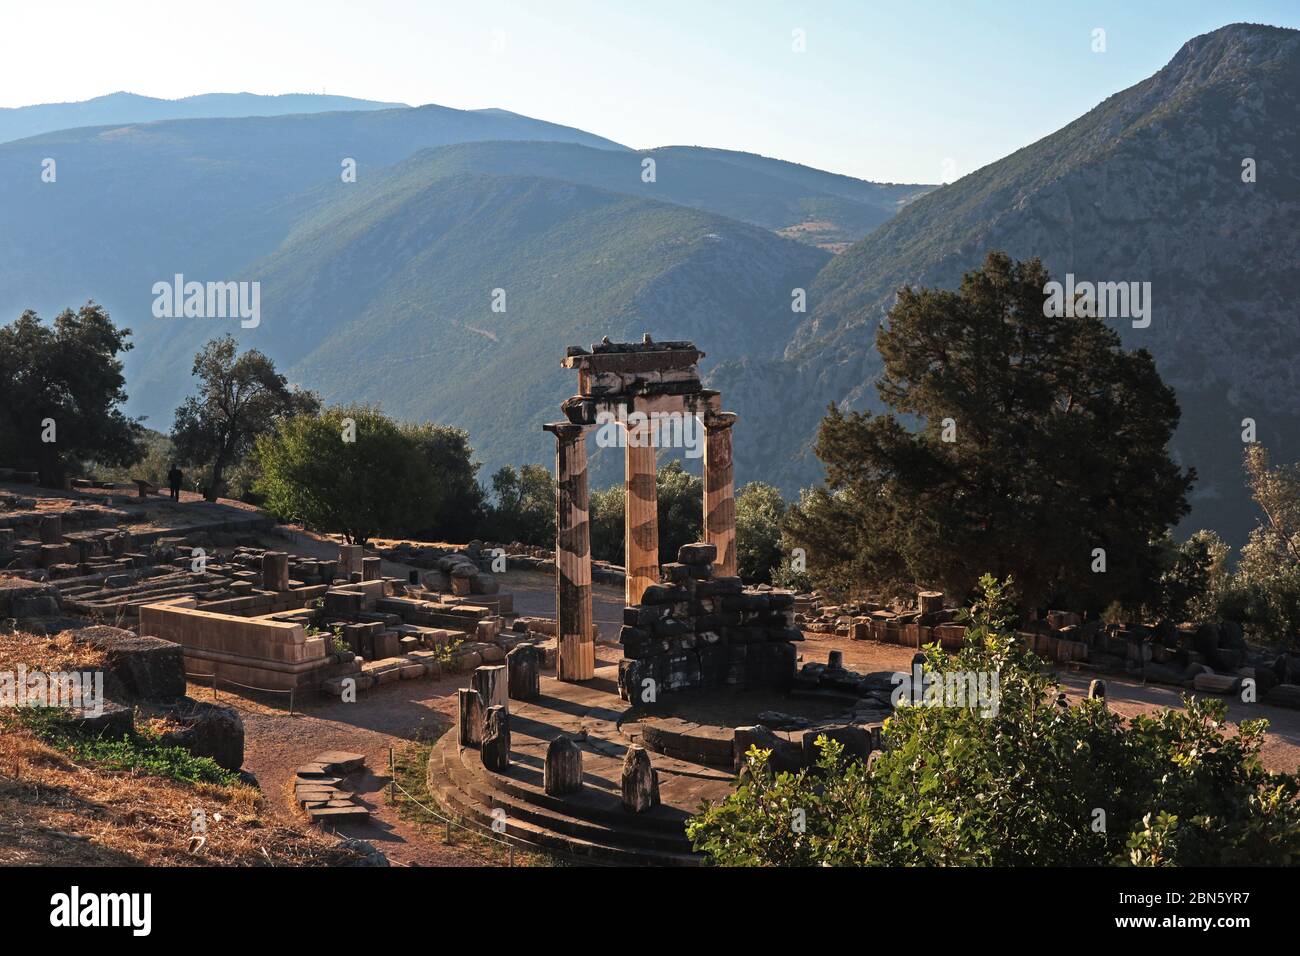 Temple of Athena Proaia, Delphi, Greece Stock Photo